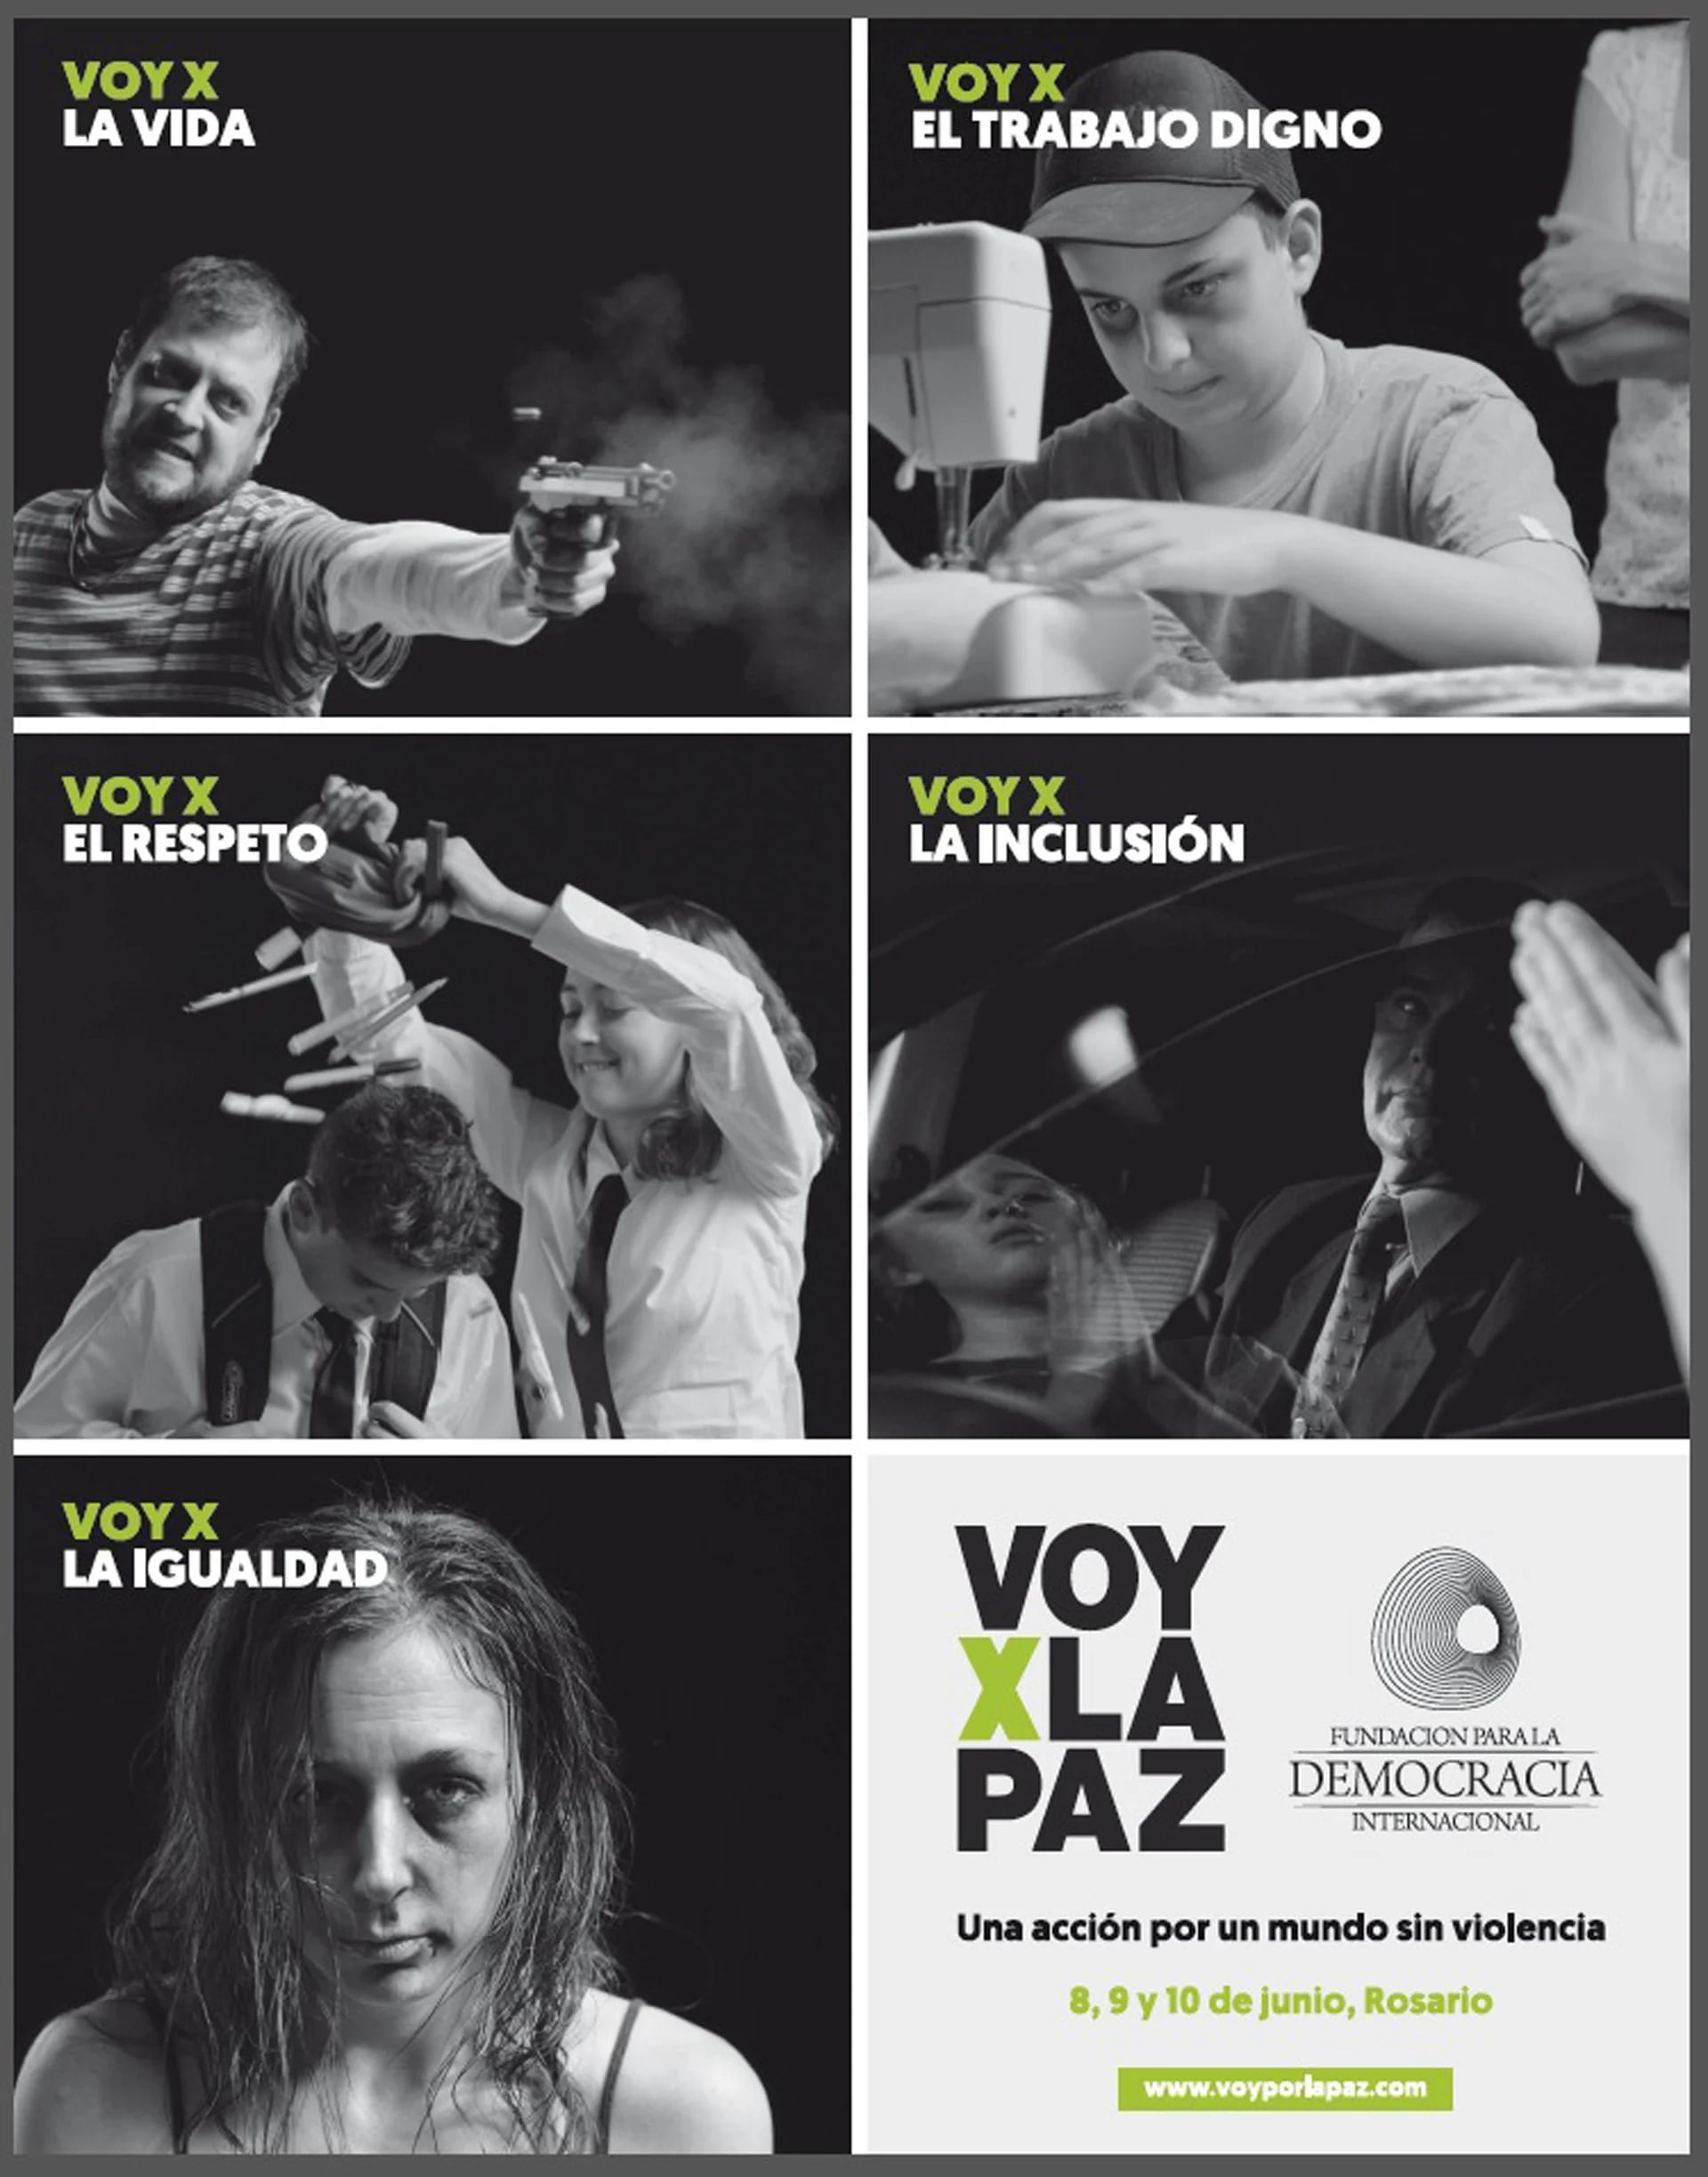 Por la vida, por el trabajo digno, por el respeto, por la inclusión y por la igualdad: #VoyXLaPaz